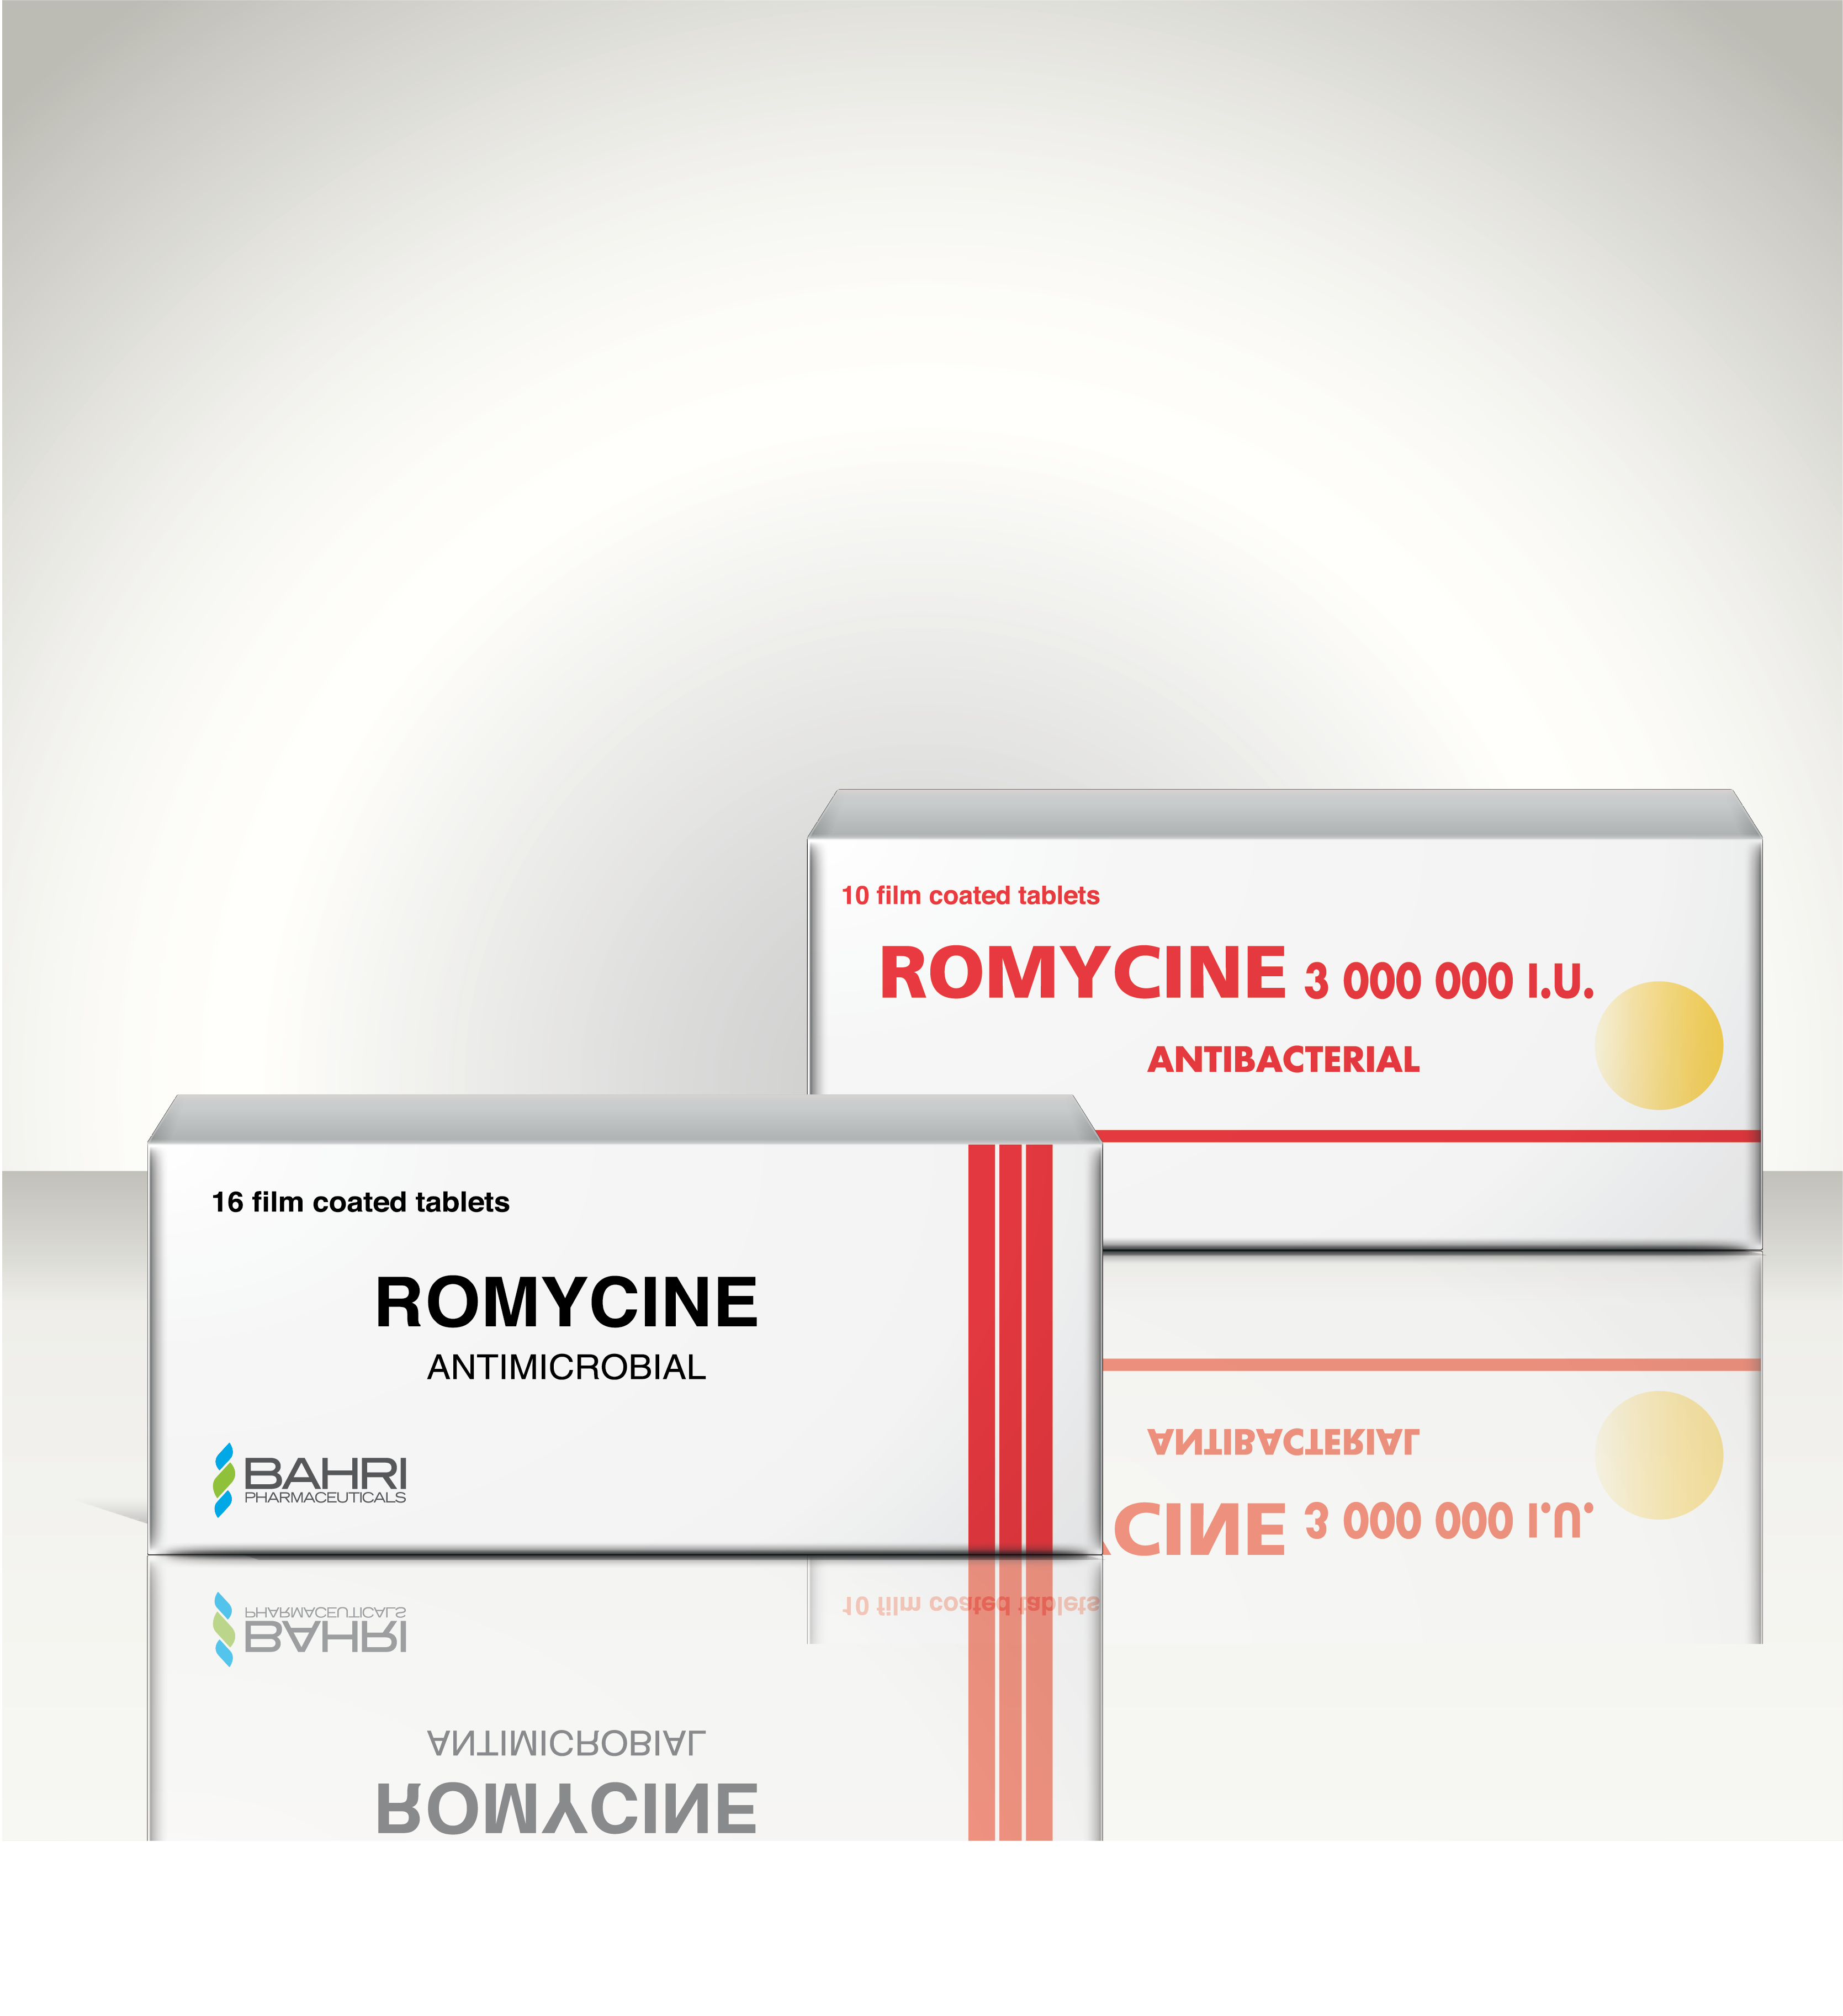 Romycine